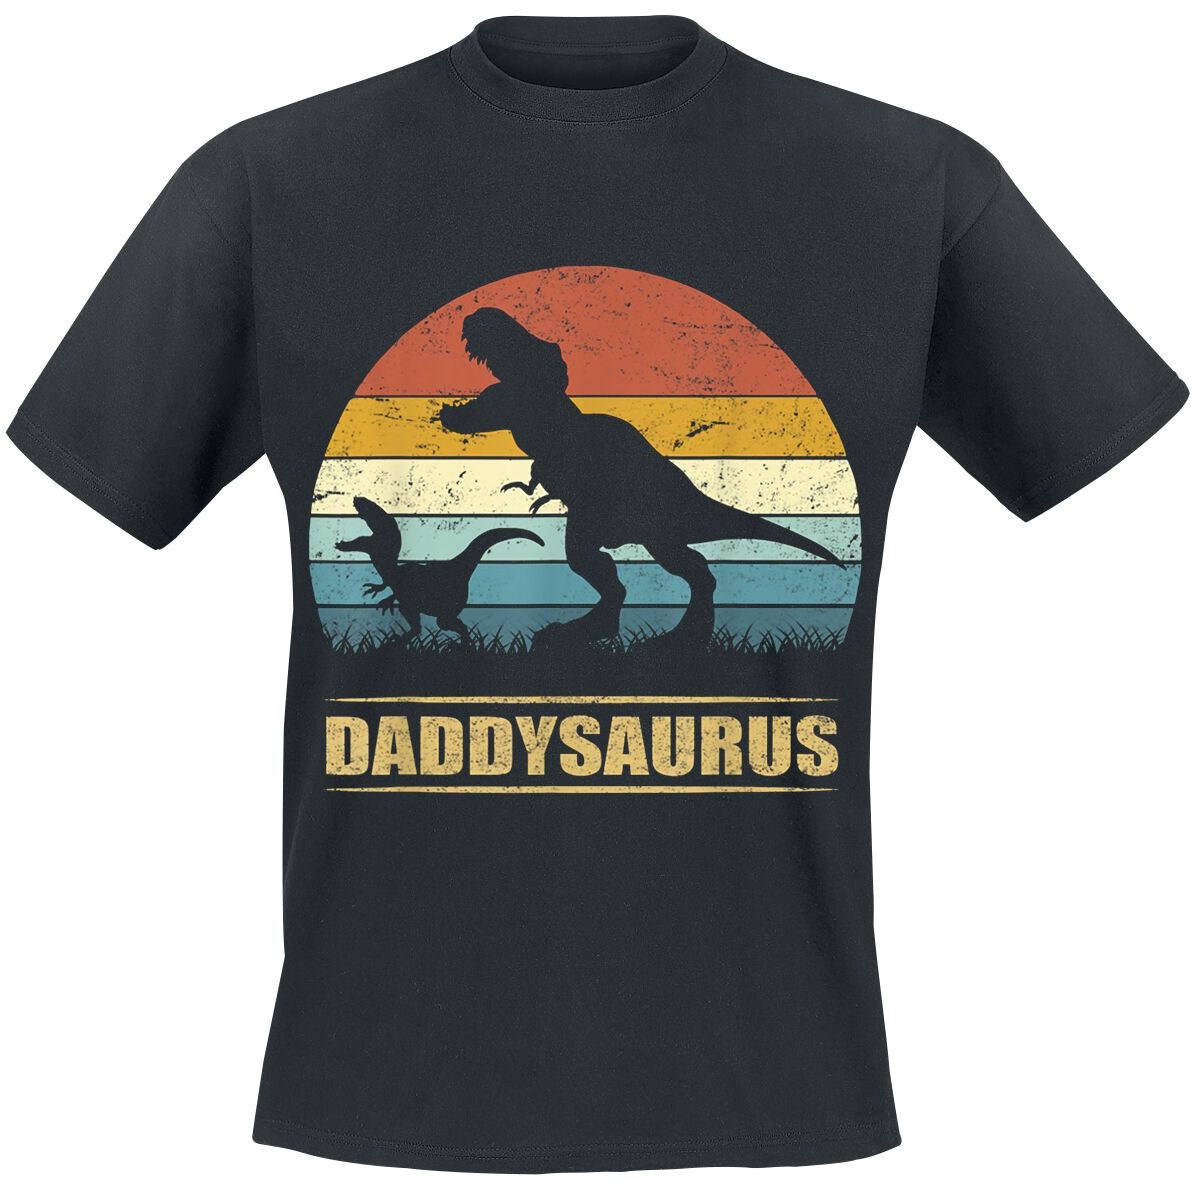 Familie & Freunde T-Shirt - Daddysaurus 3 - S bis 4XL - für Männer - Größe 4XL - schwarz